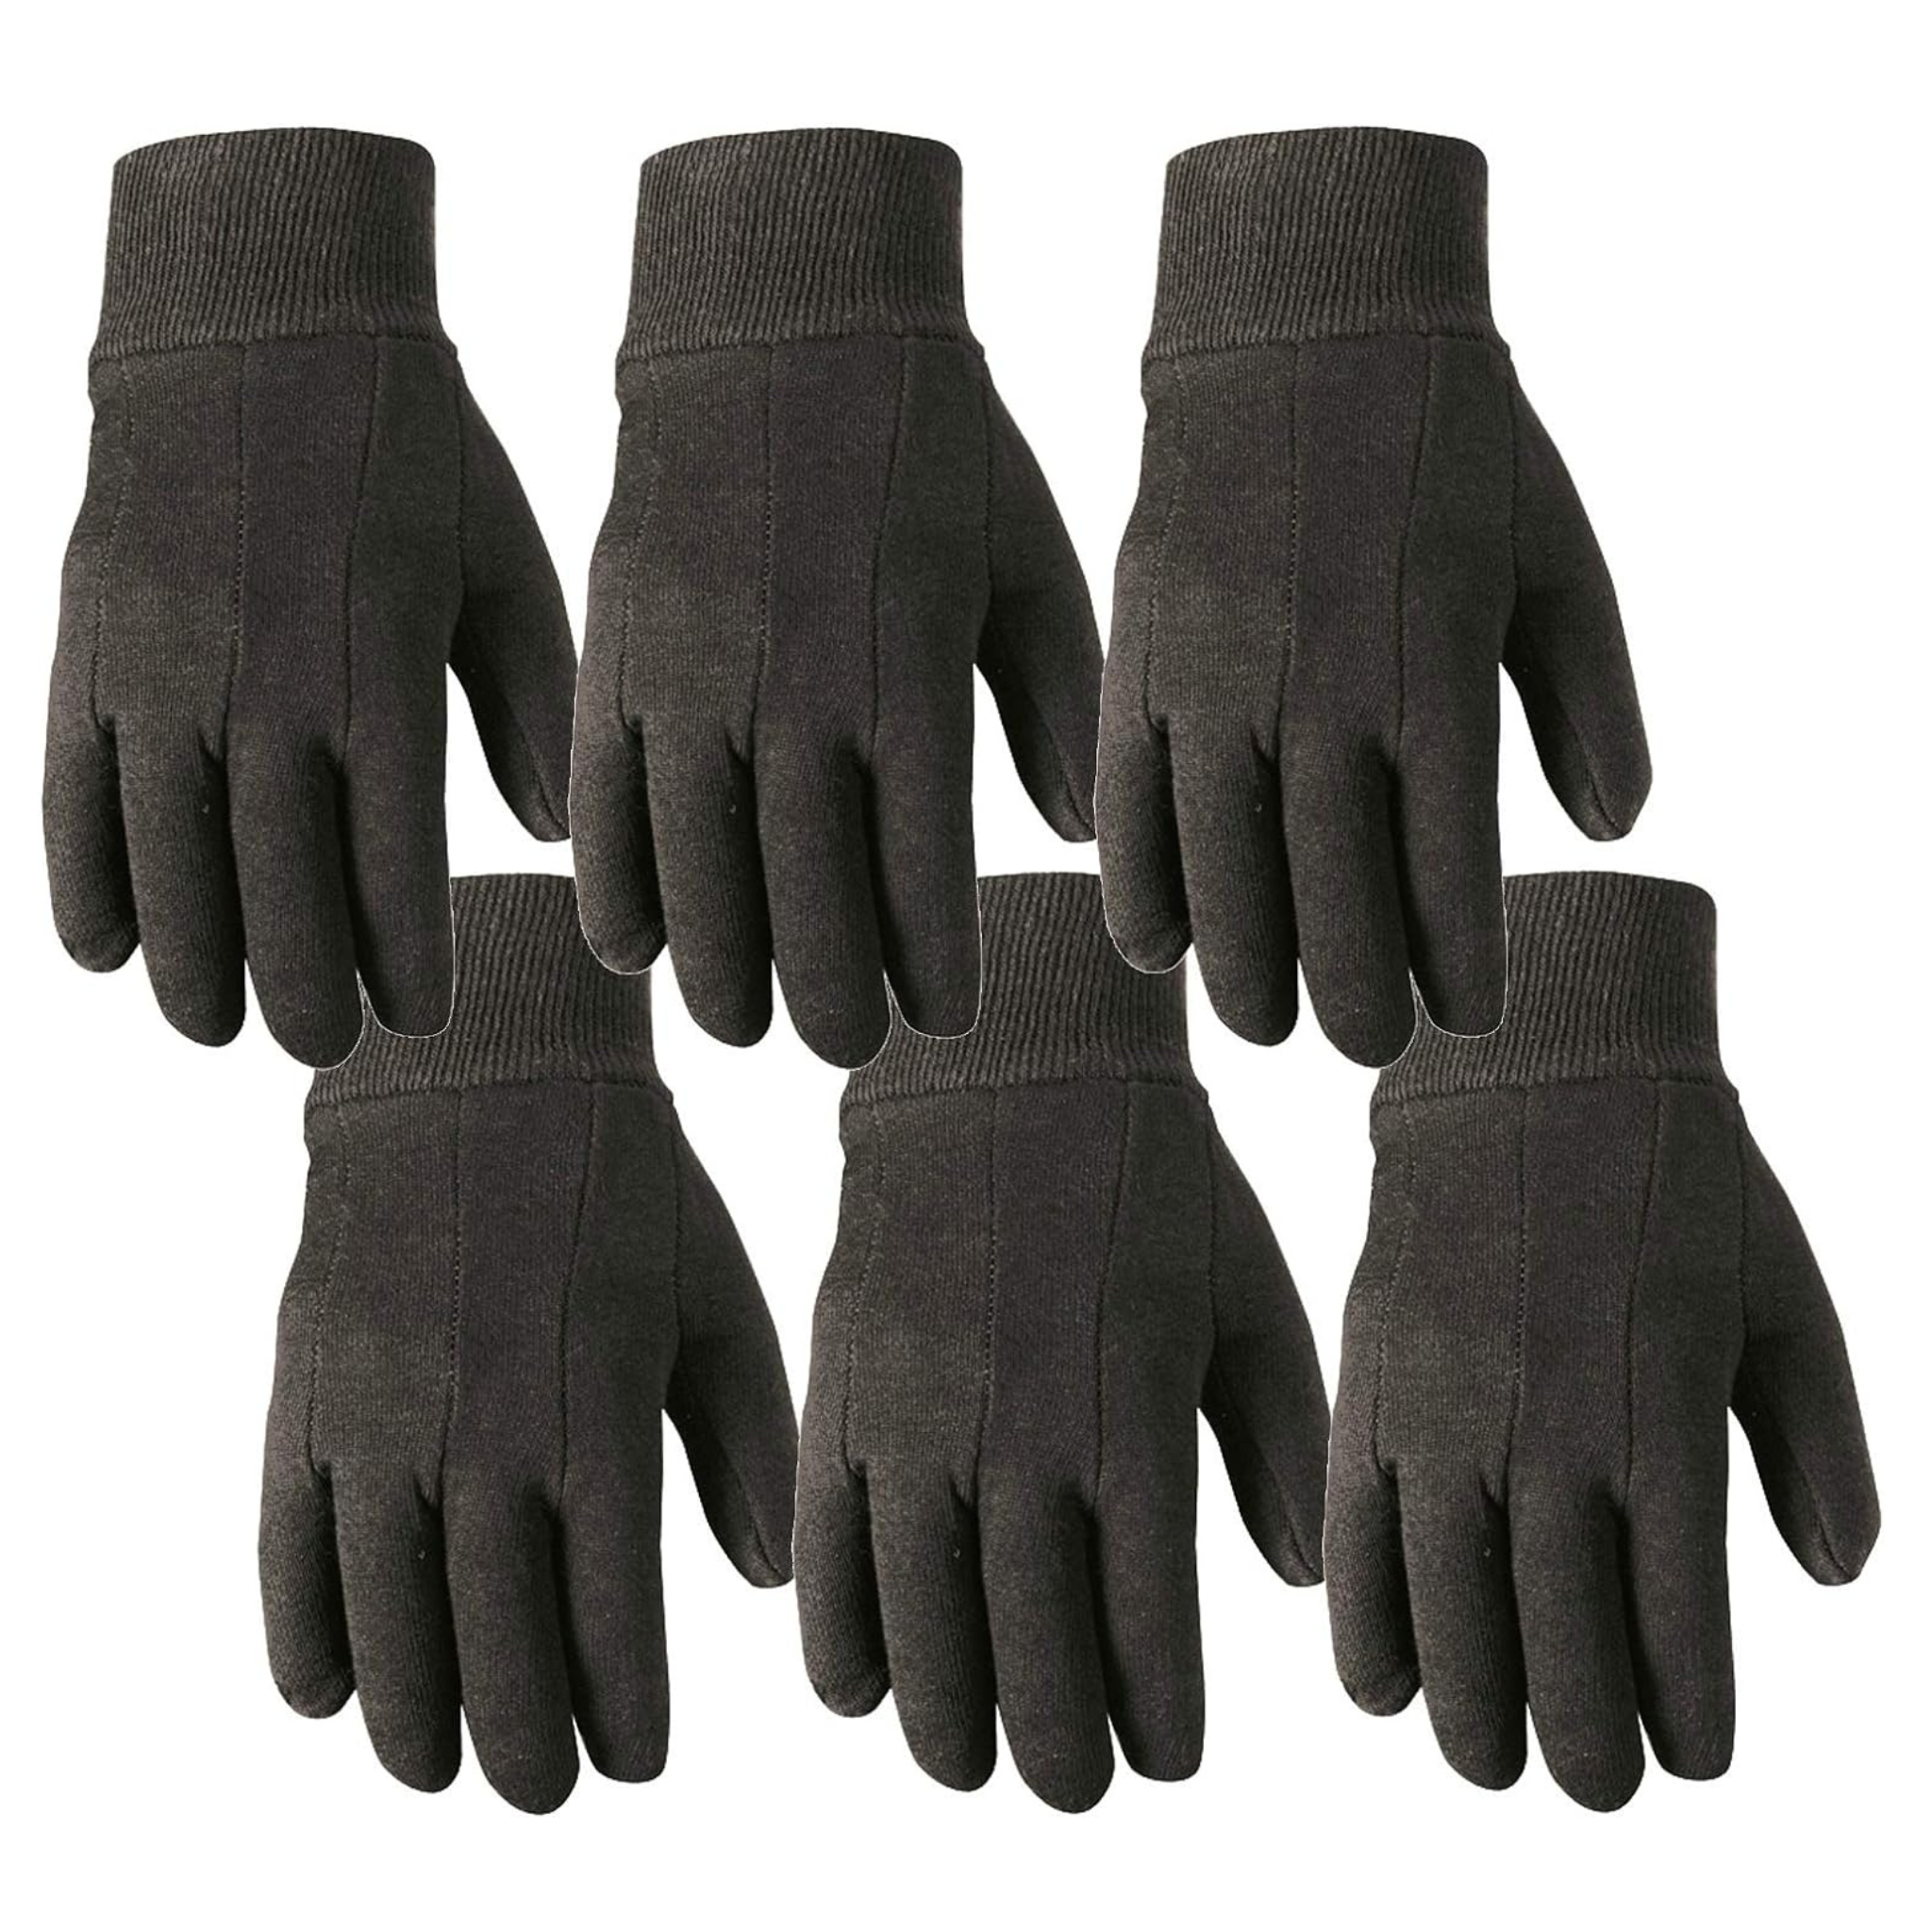 6-Pair Wells Lamont Versatile Cotton Work & Gardening Gloves